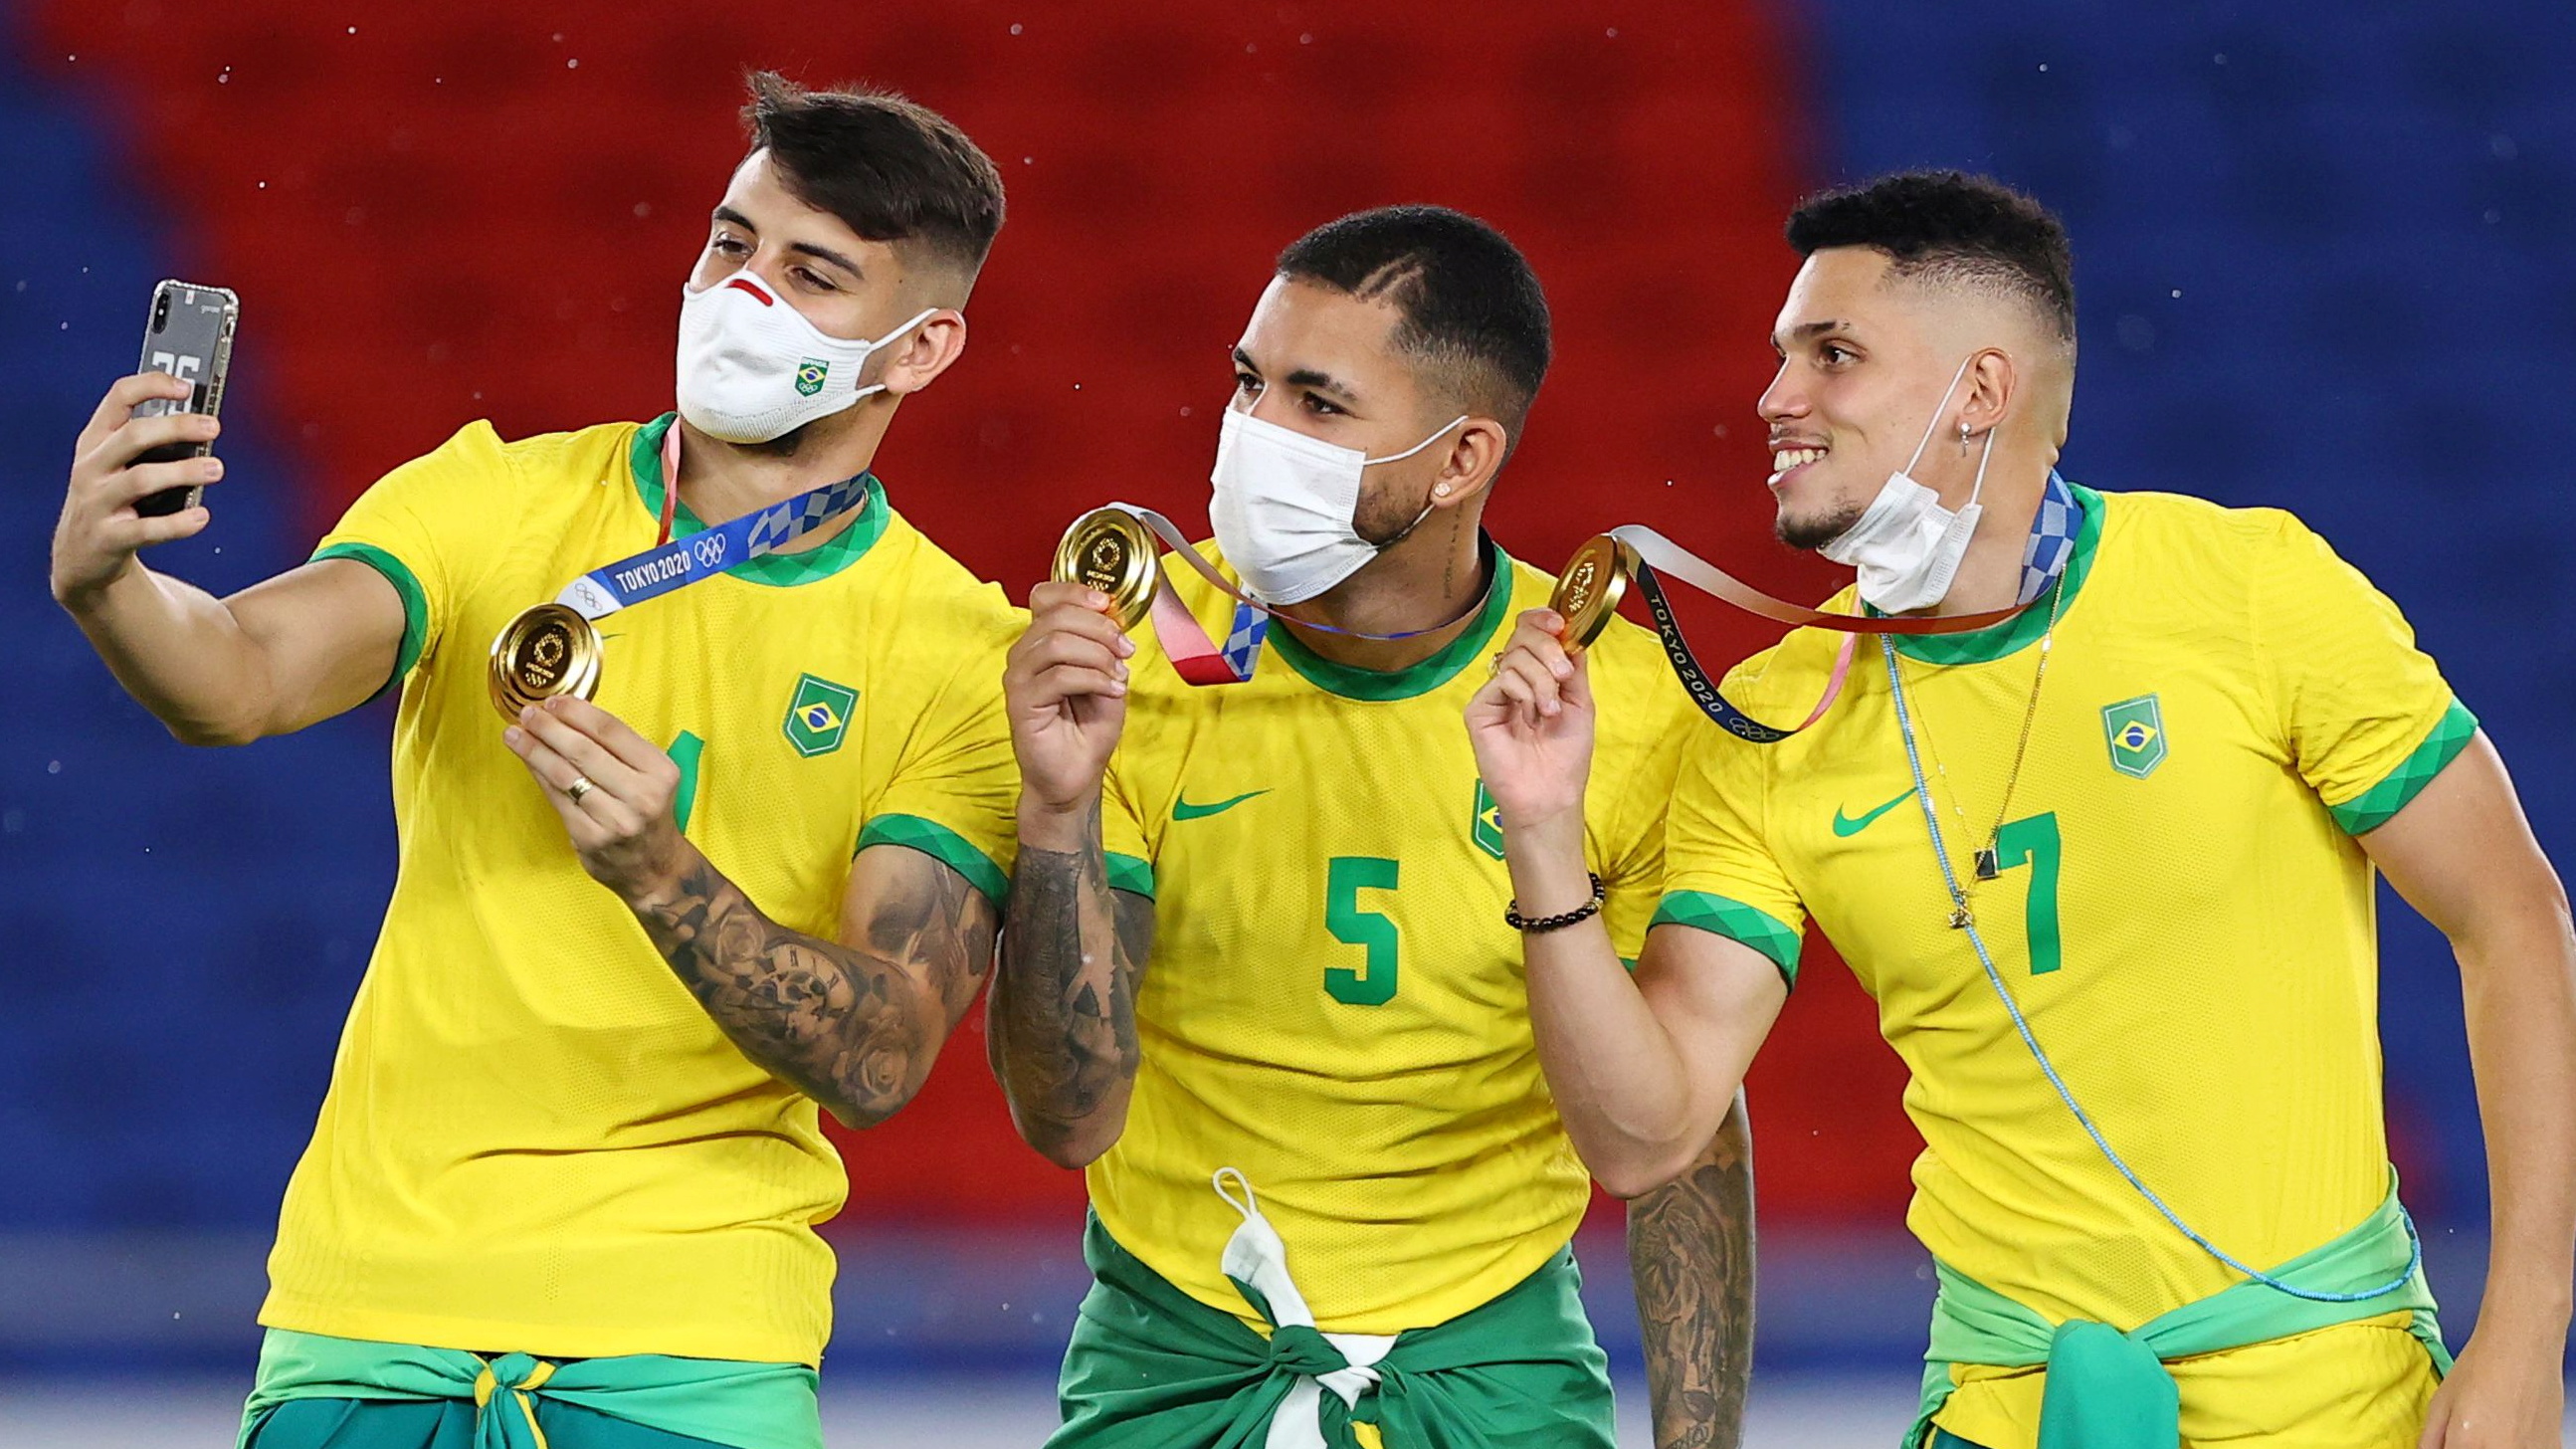 Dura acusación de deportistas olímpicos brasileños contra la selección de fútbol: “No son parte del equipo y no les importa”